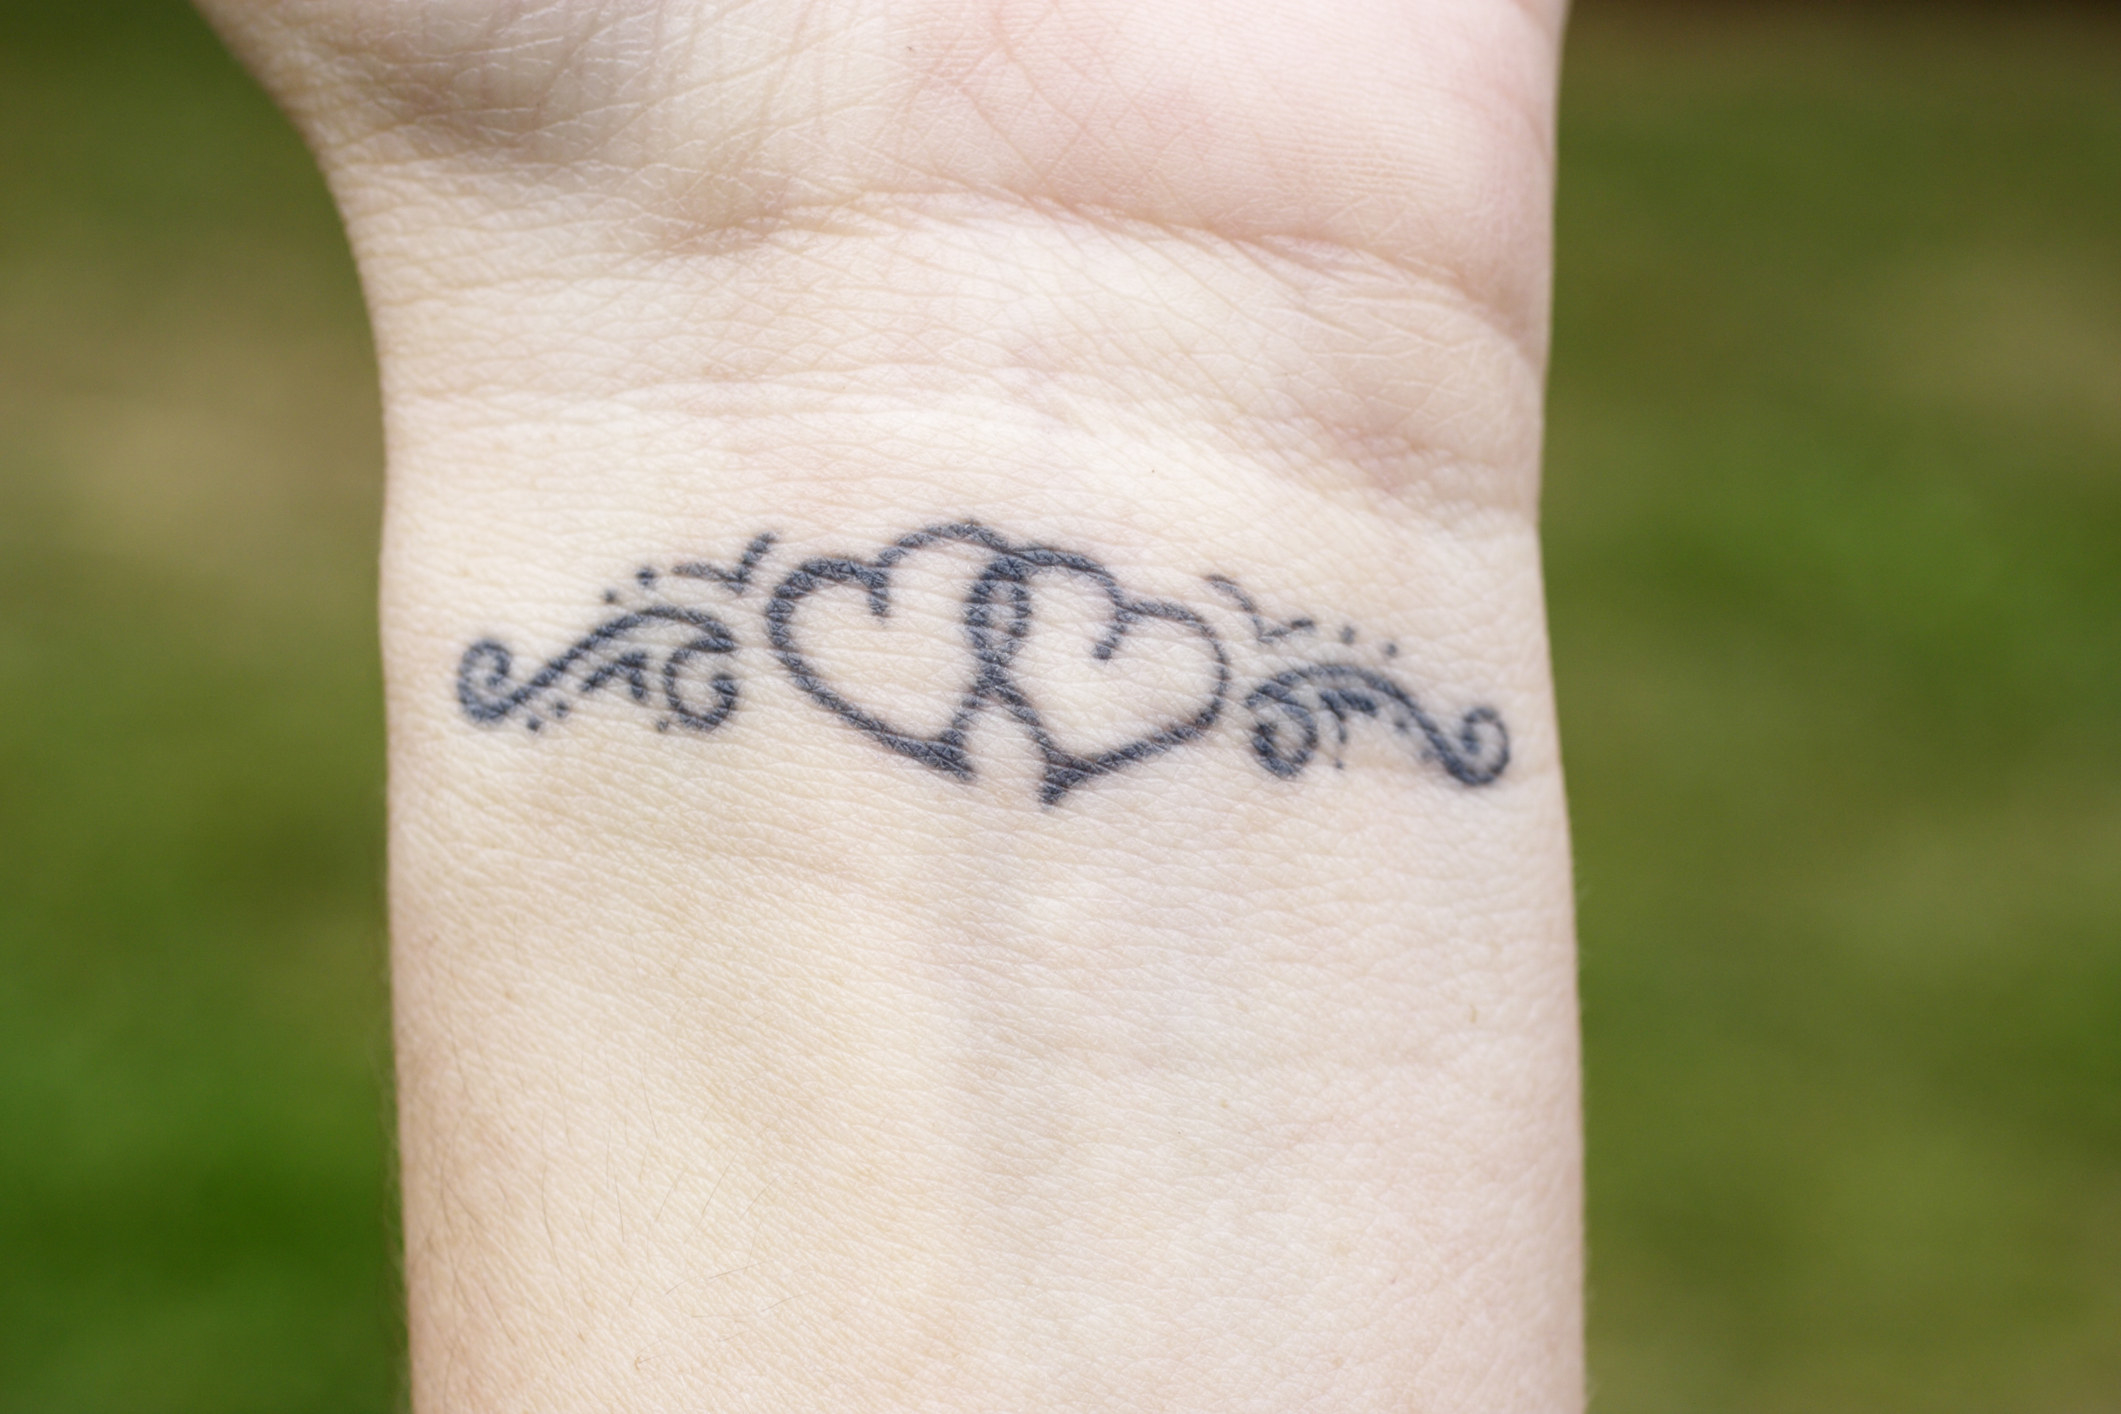 A heart tattoo on a wrist.